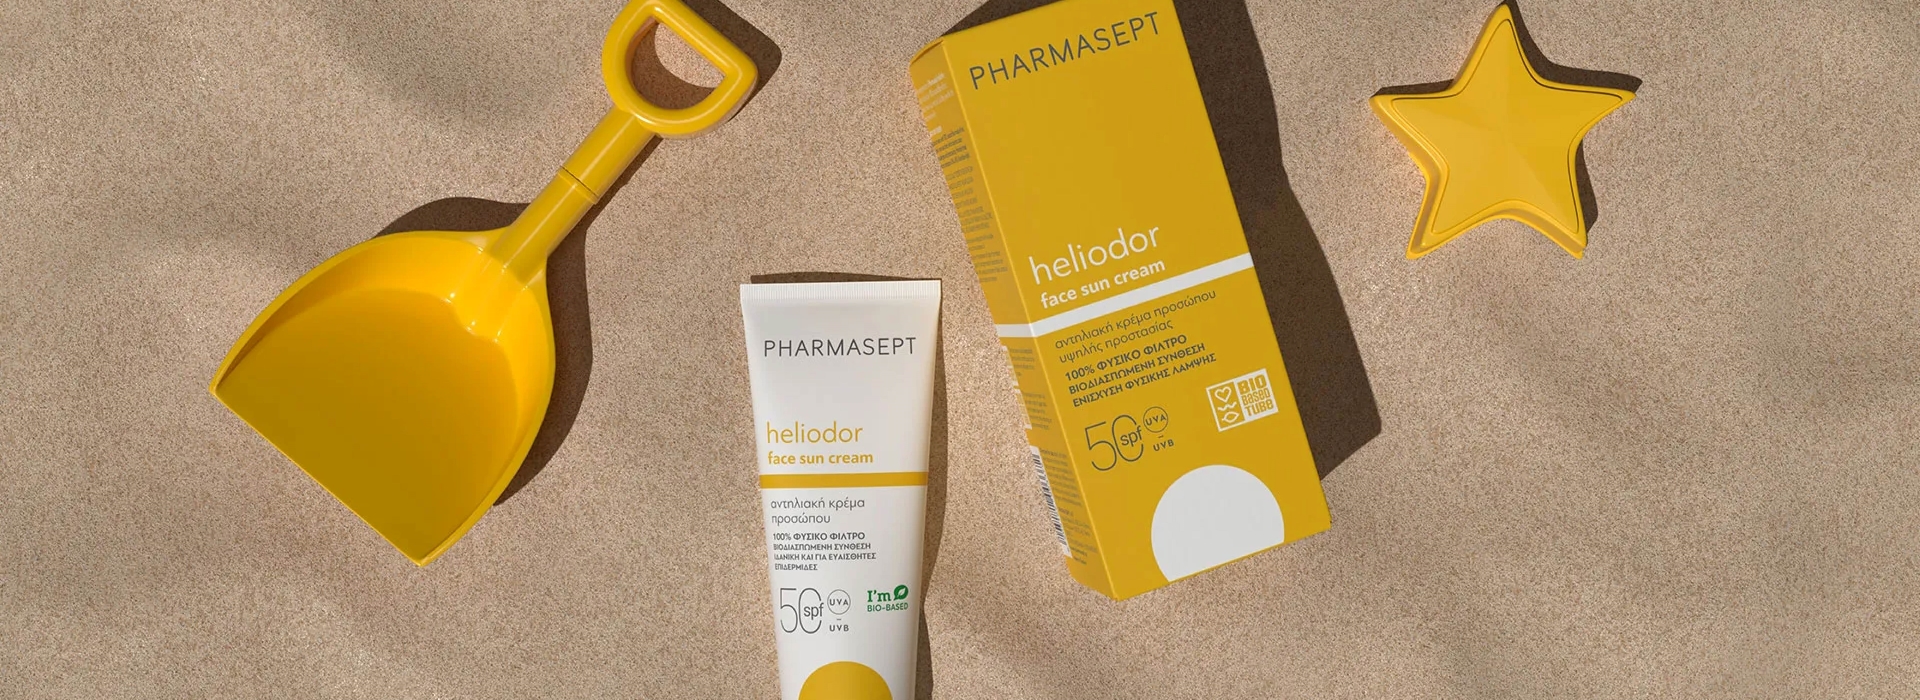 Pharmasept - Heliodor Sun Care